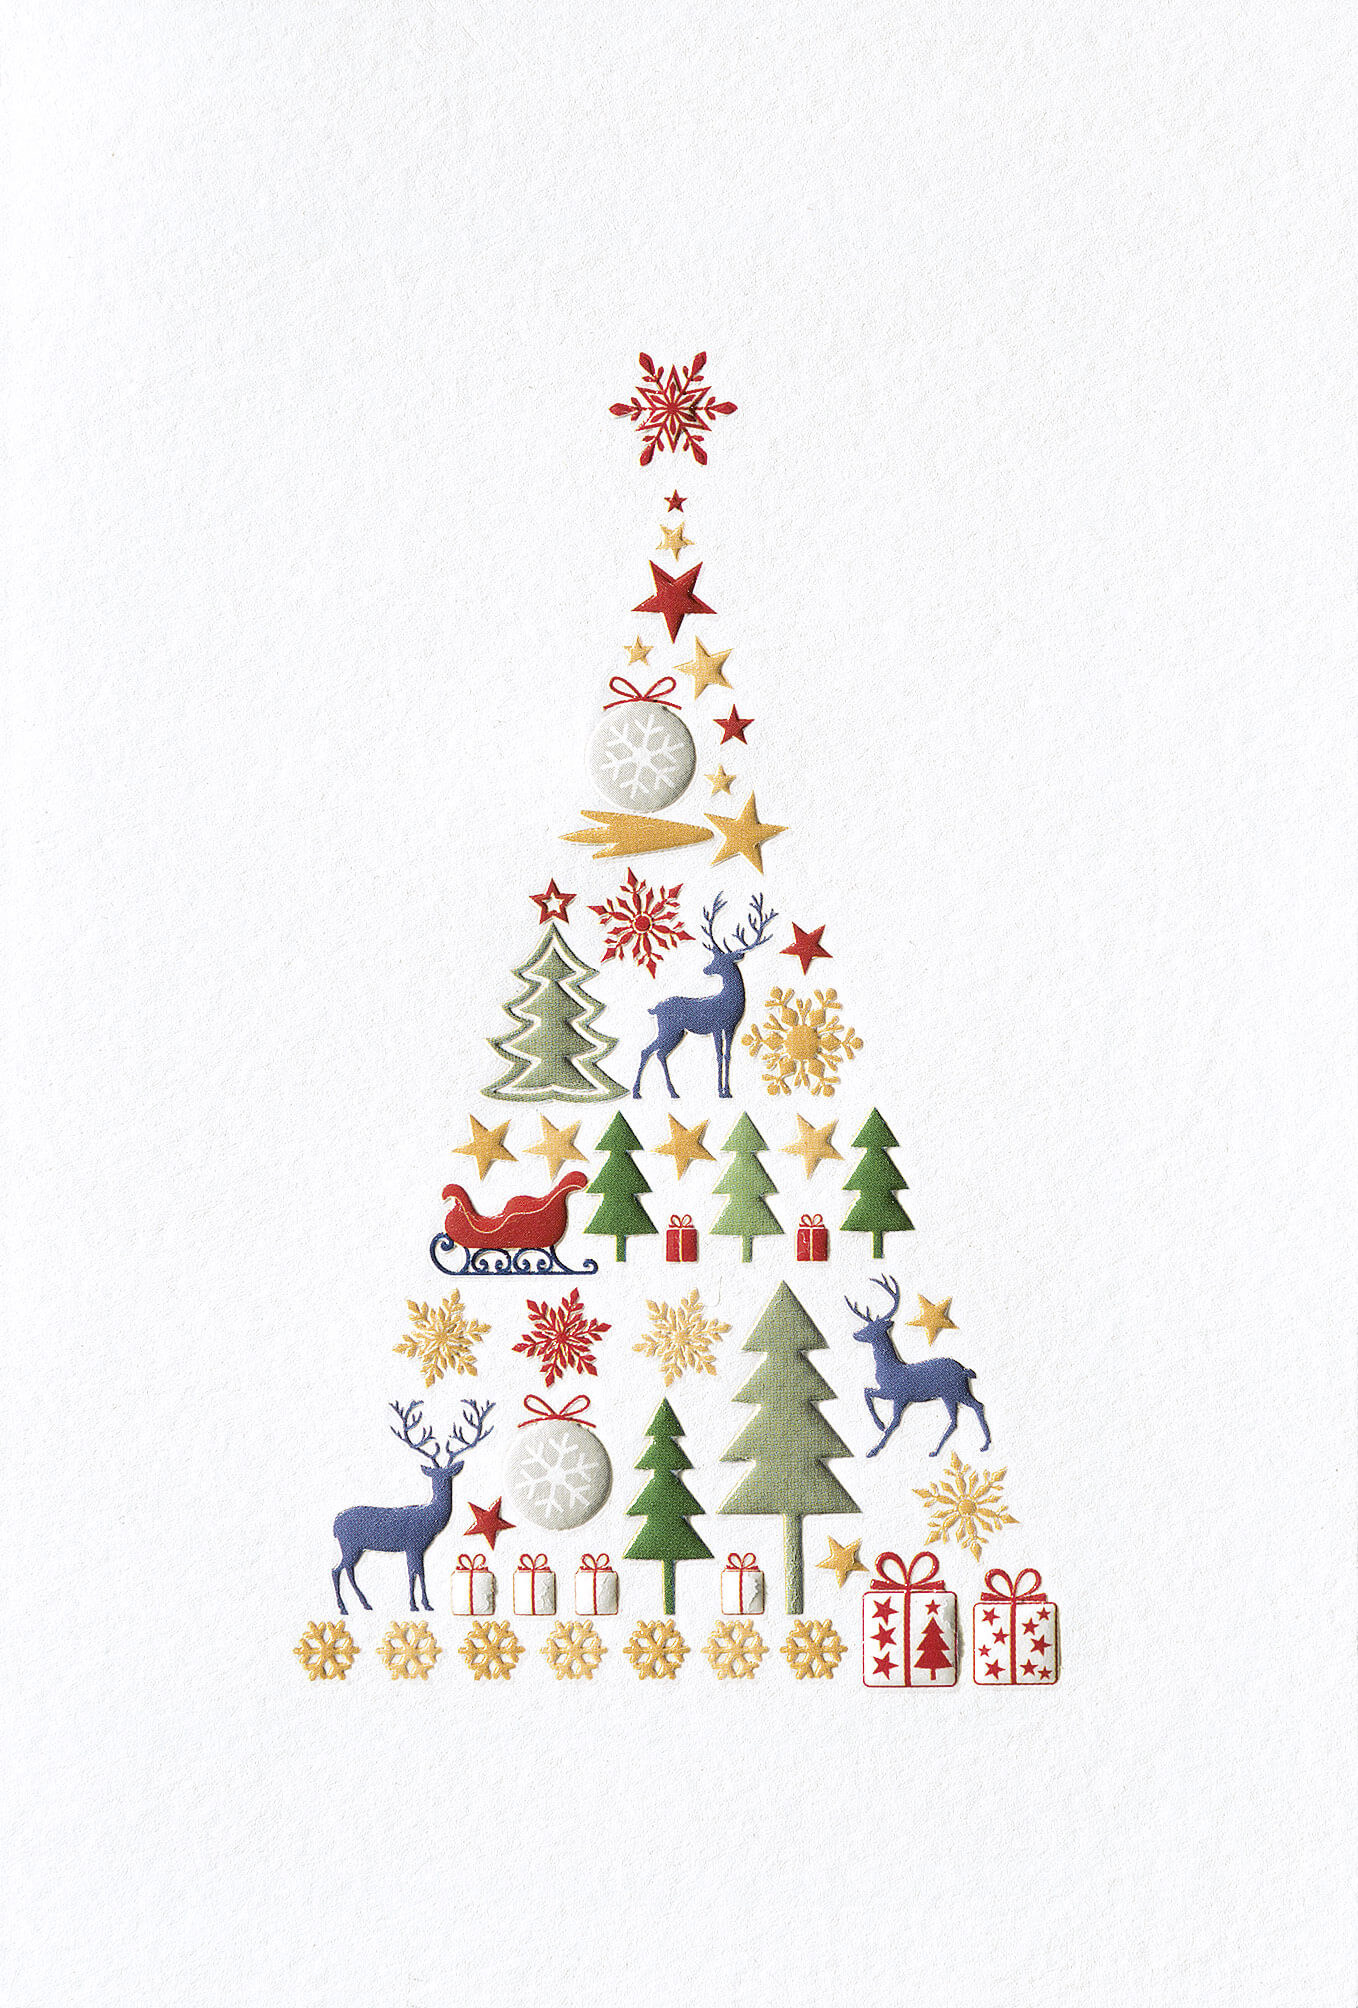 Farbenfrohe Festtagskarte mit Weihnachtsbaum aus weihnachtlichen